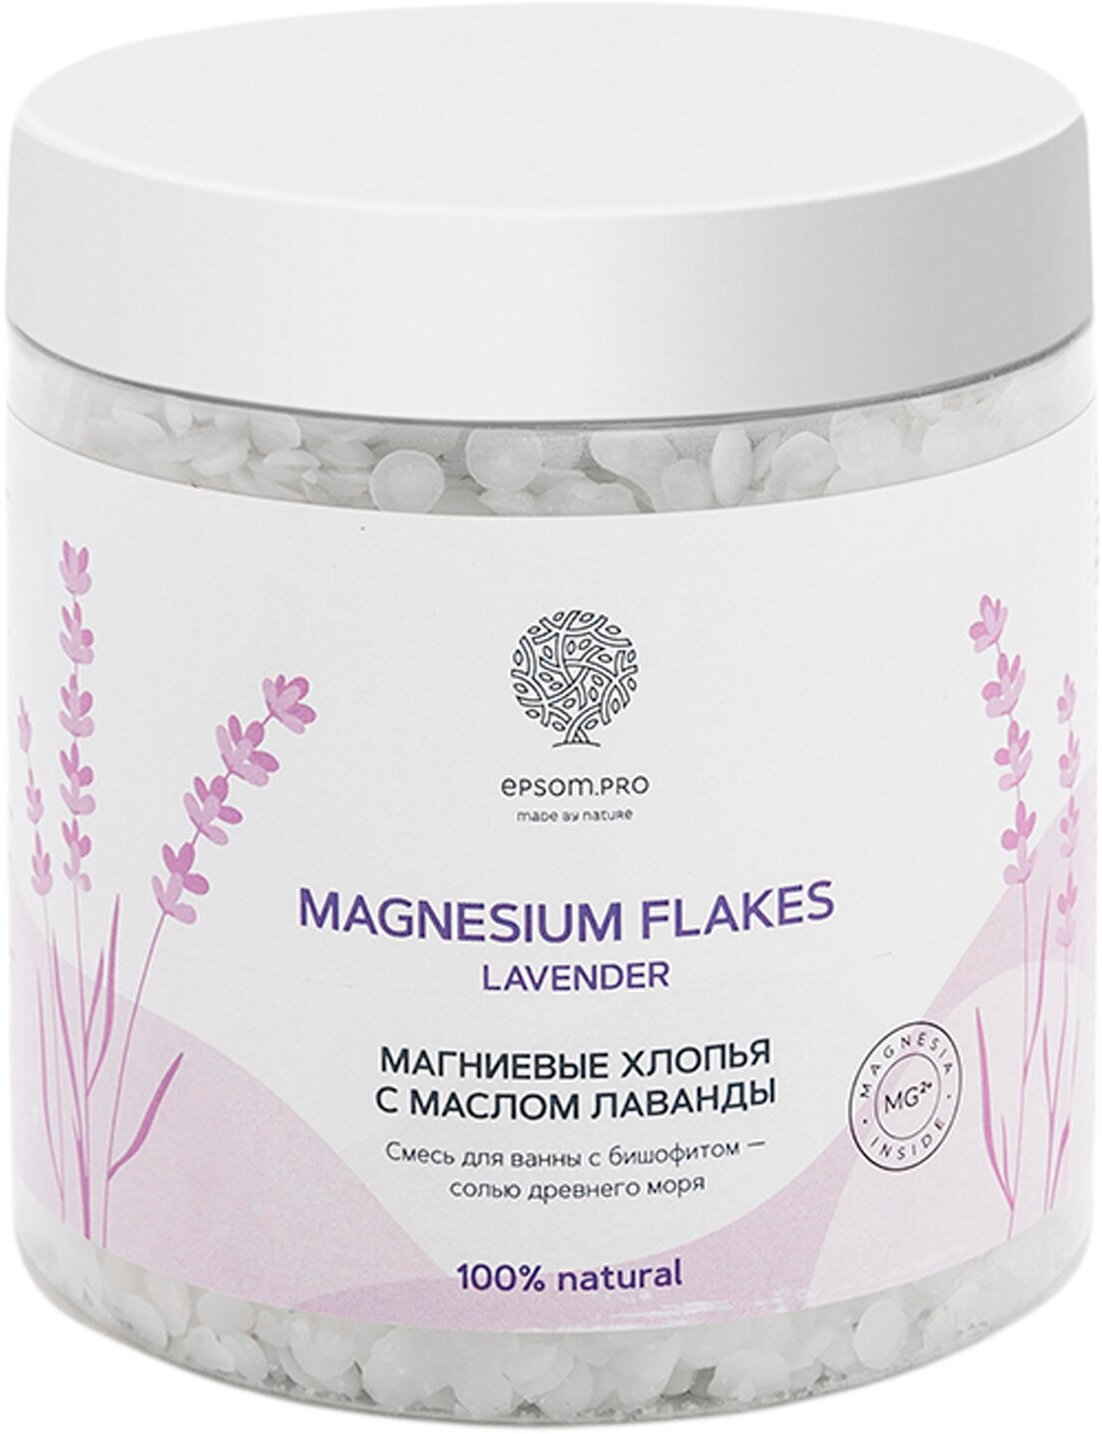 EPSOM.PRO Магниевые хлопья для ванны с маслом лаванды Magnesium flakes Lavender, 400 г